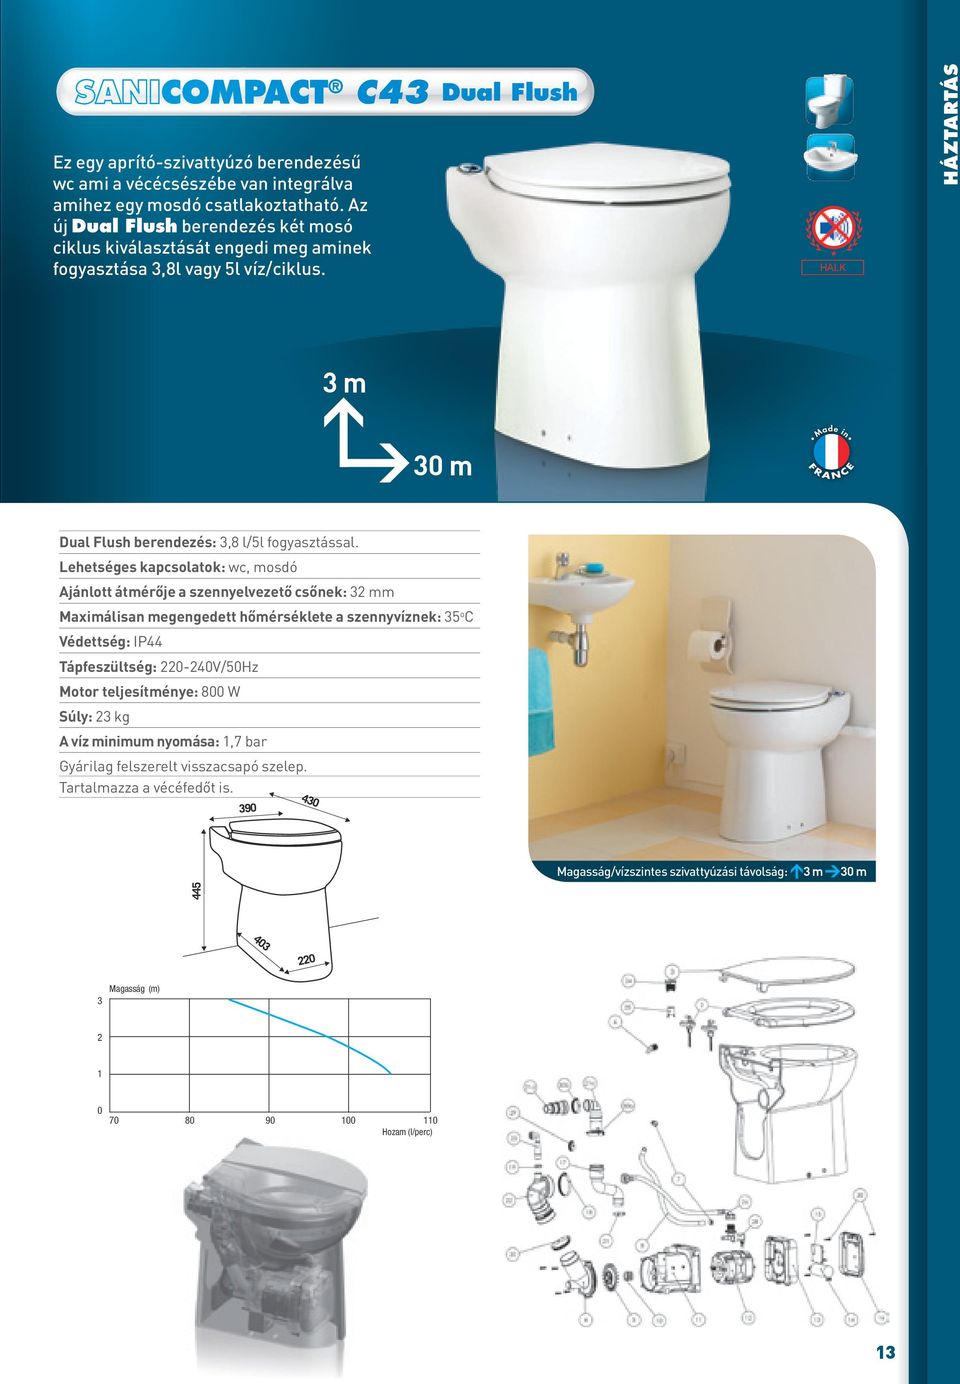 Dual Flush HALK Háztartás m 0 m Dual Flush berendezés:,8 l/5l fogyasztással.